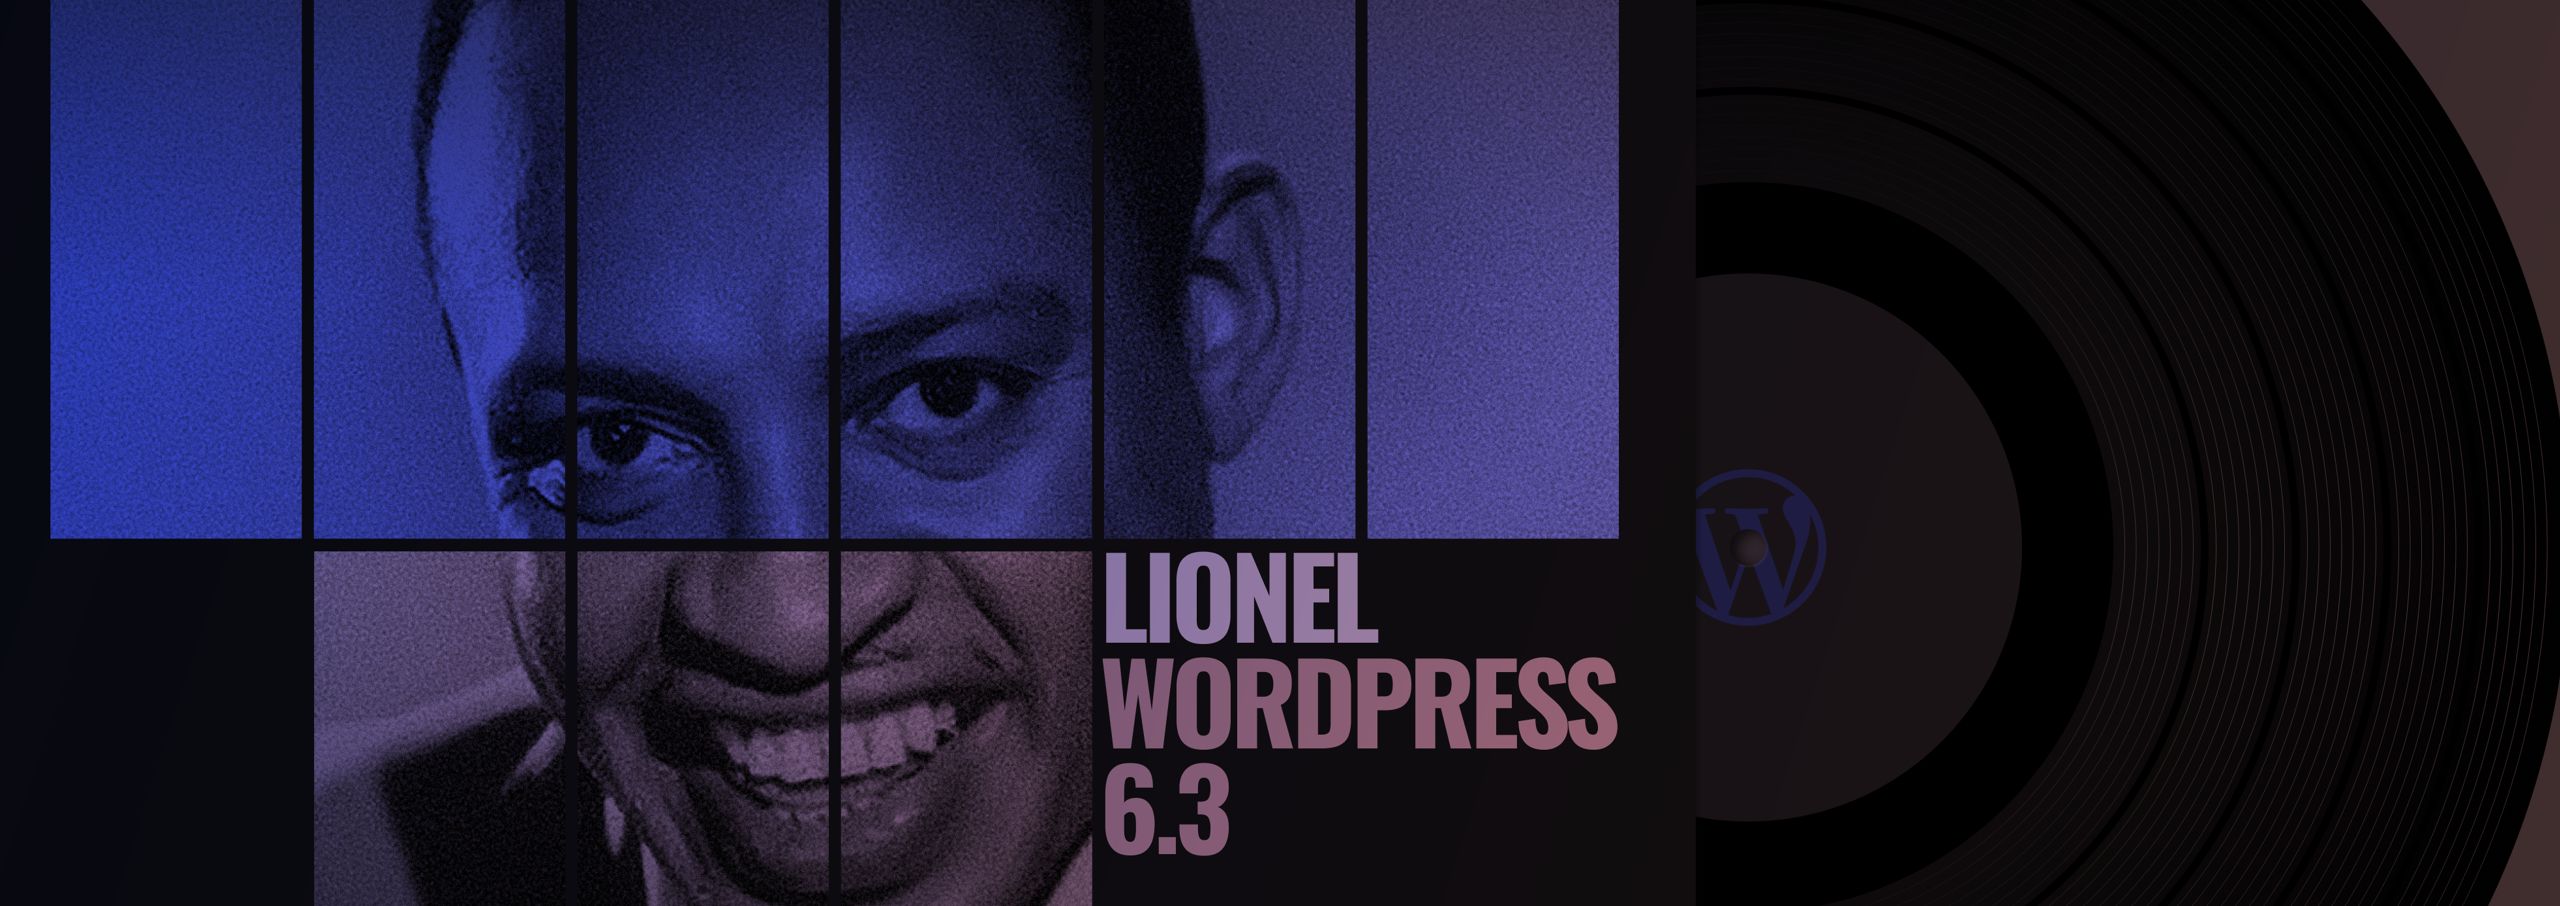 WordPress 6.3 ”Lionel” on julkaistu